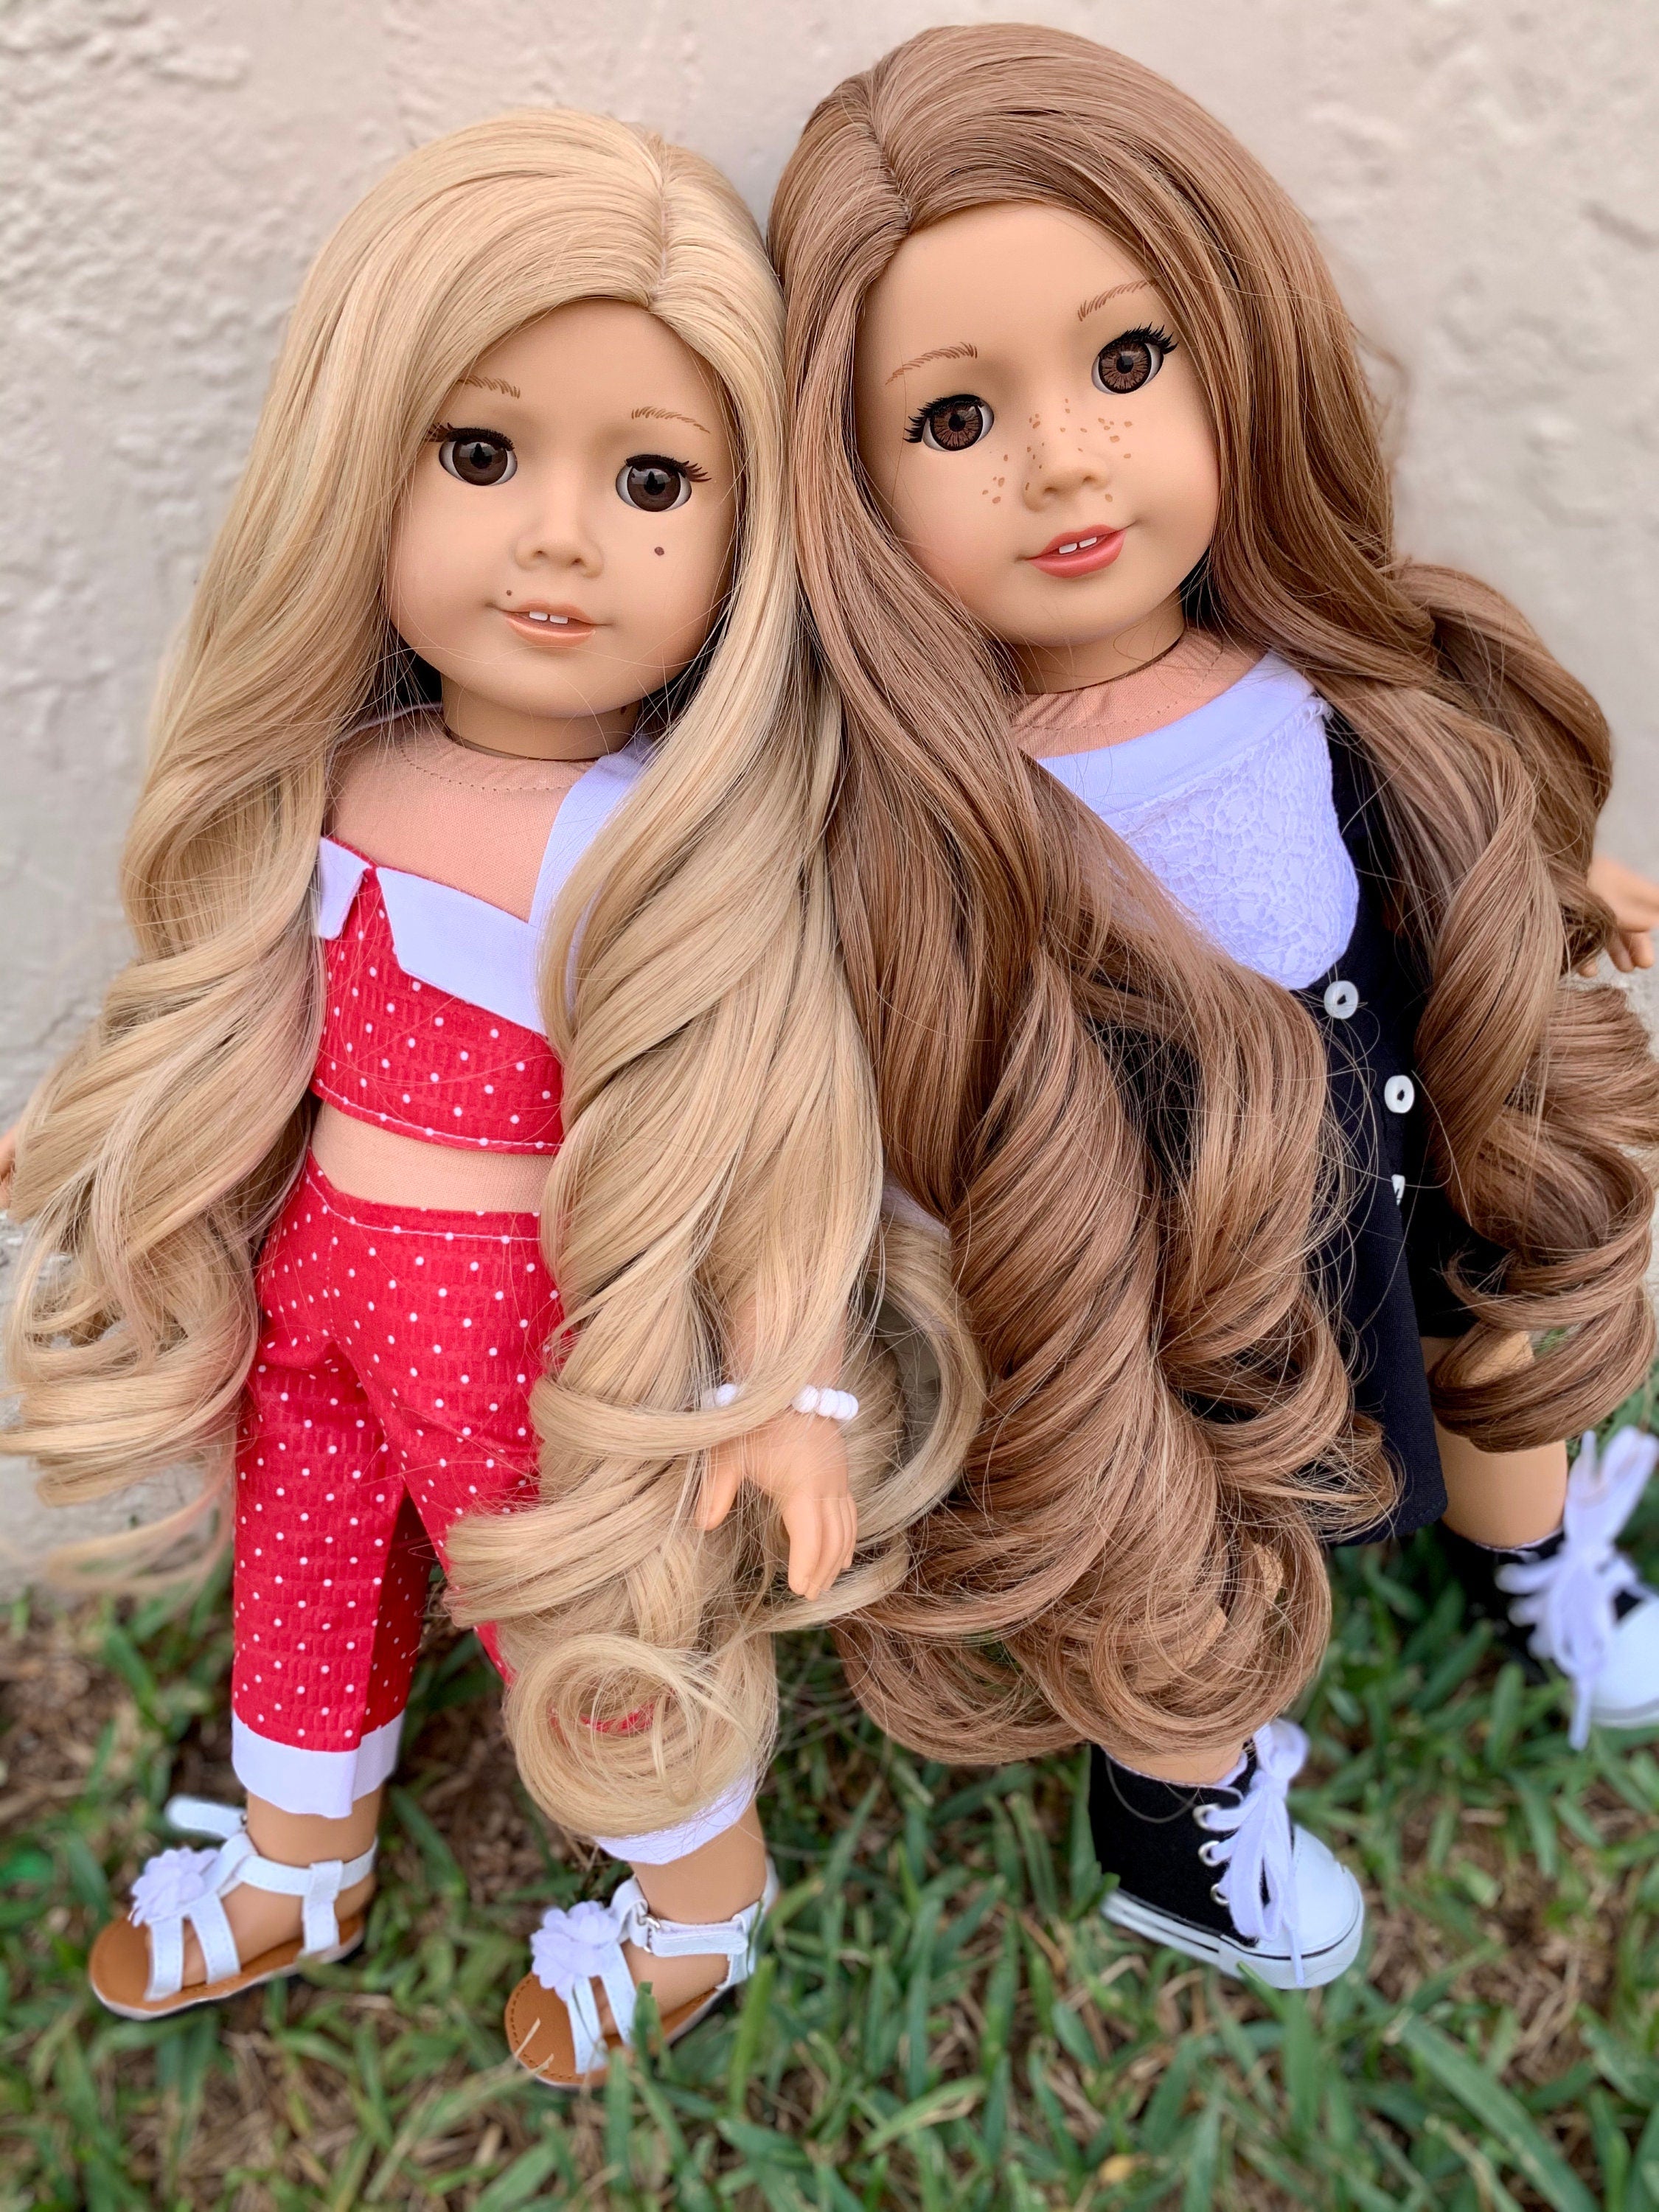 Custom doll wig for 18" American Girl Dolls - Heat Safe - Tangle Resistant - fits 10-11" head size of 18" dolls OG Blythe BJD Gotz Princess